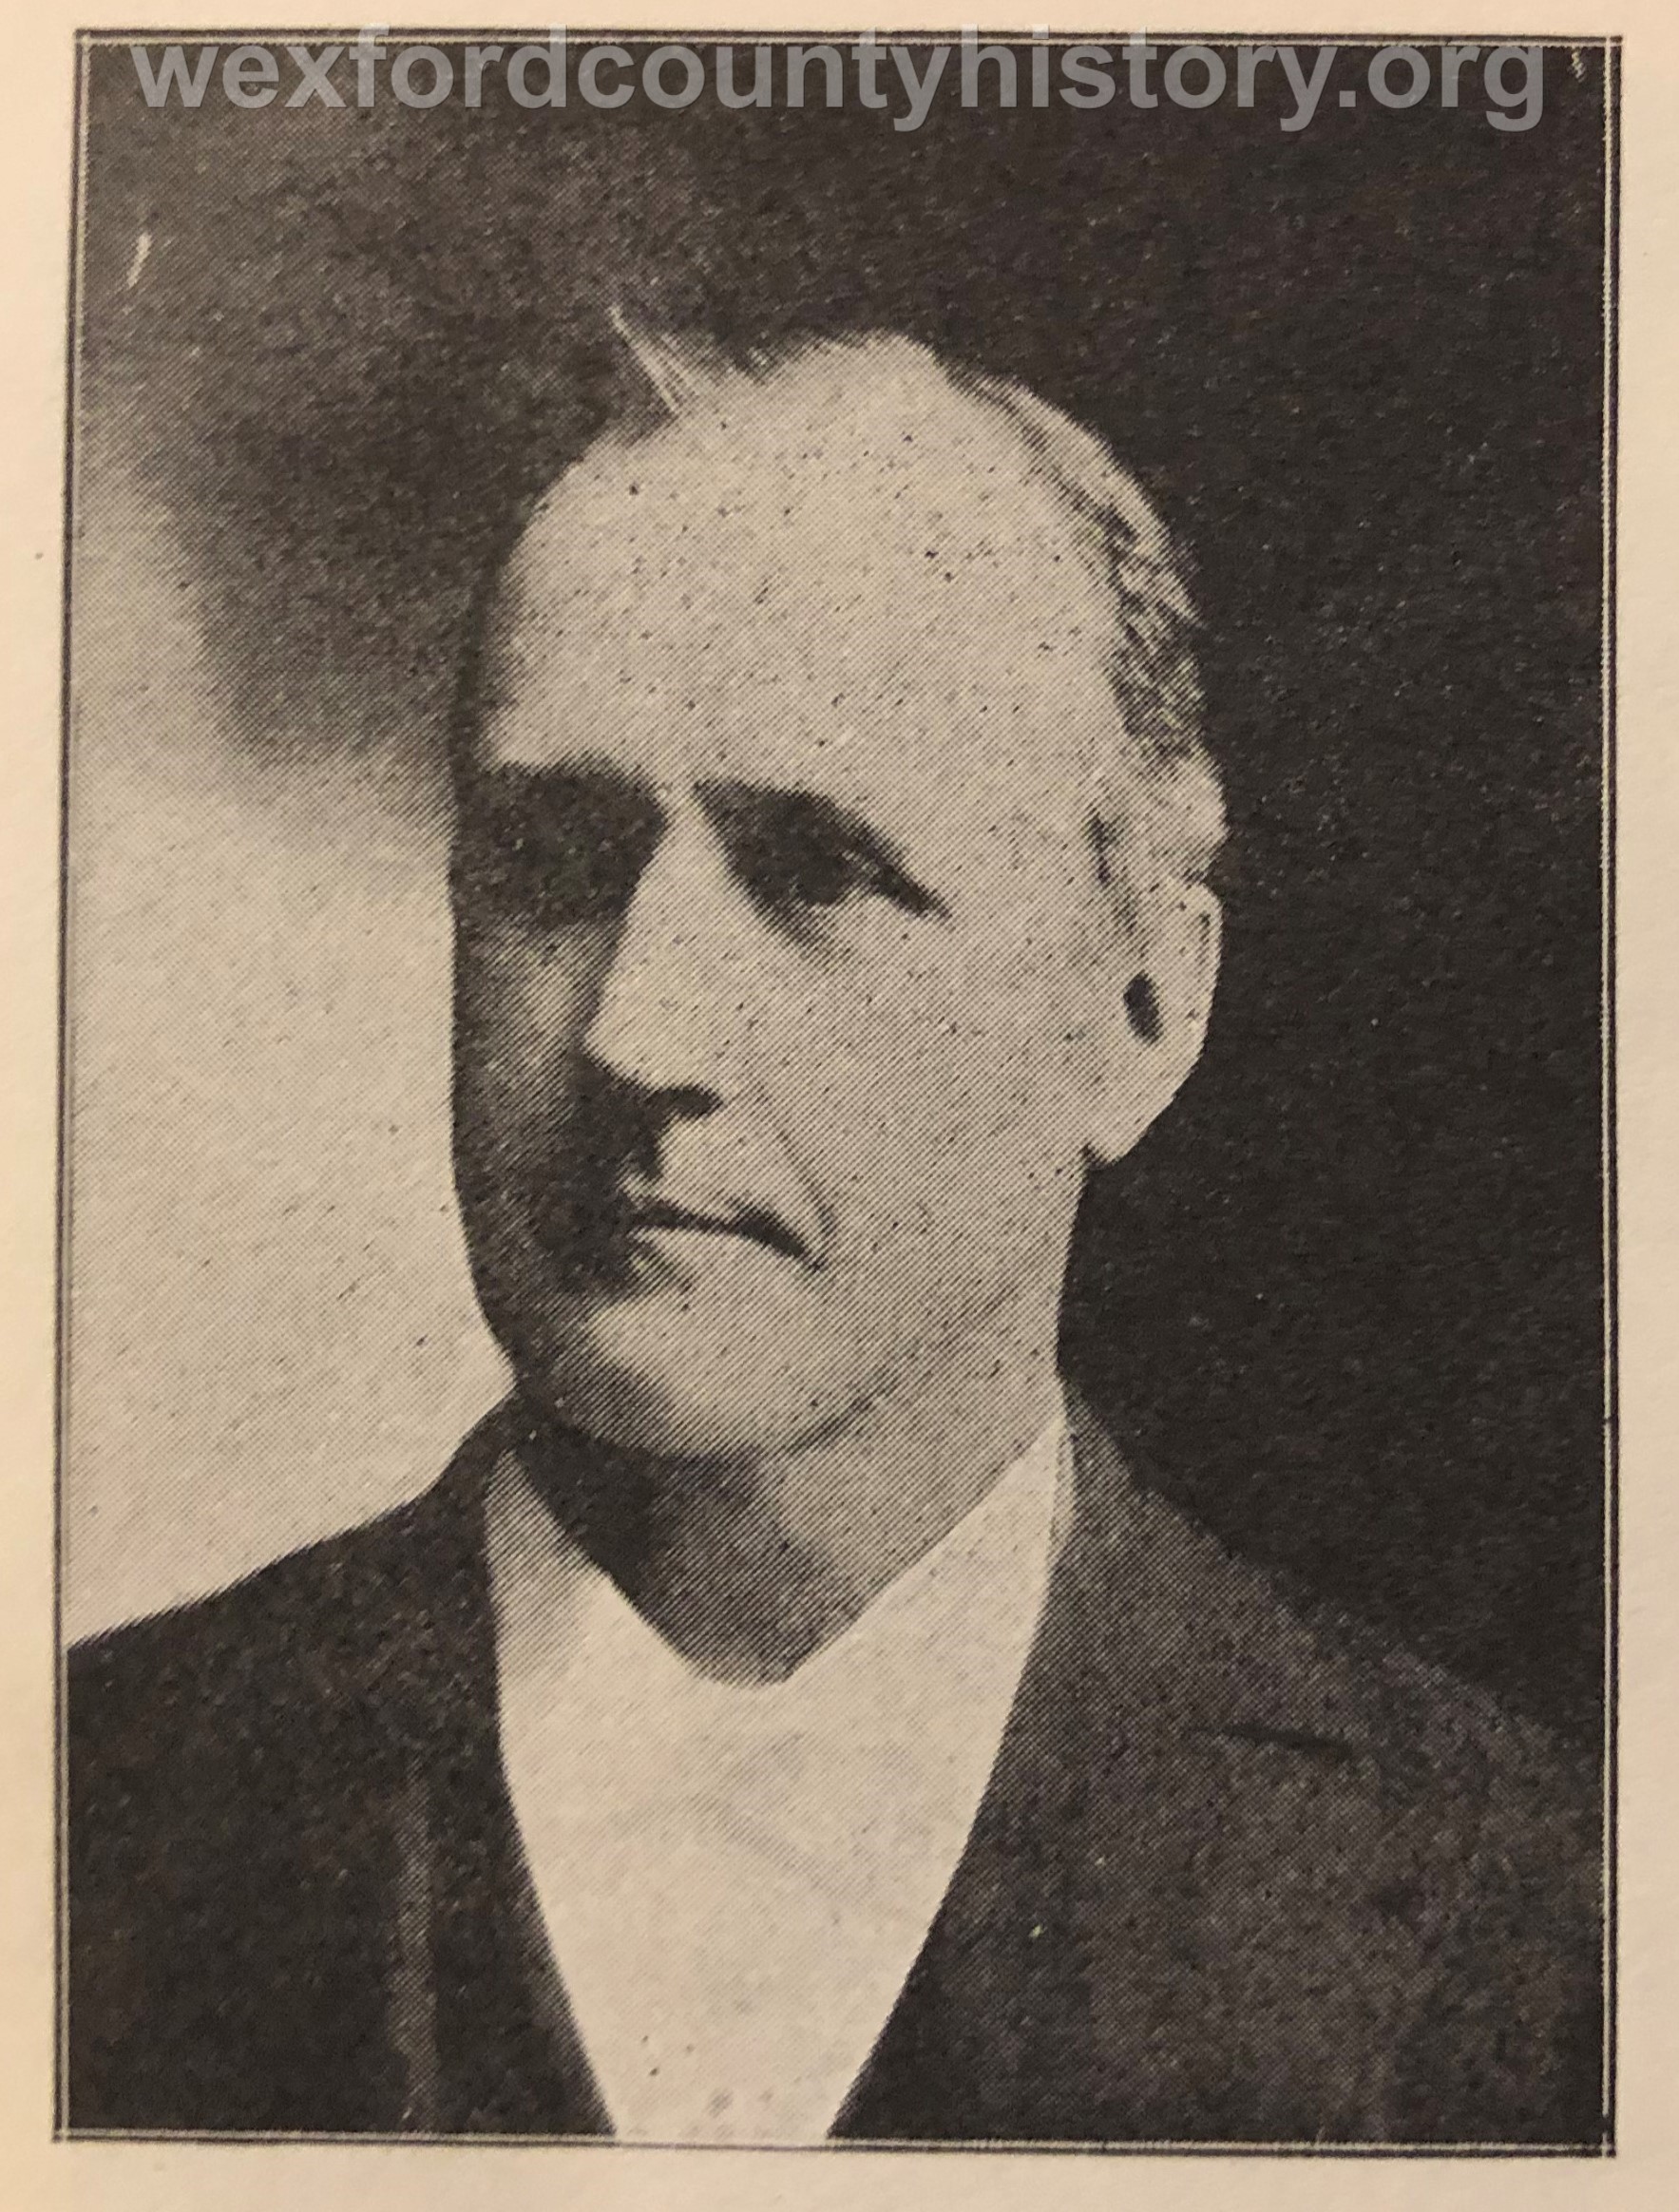 Eldon L. Metheany